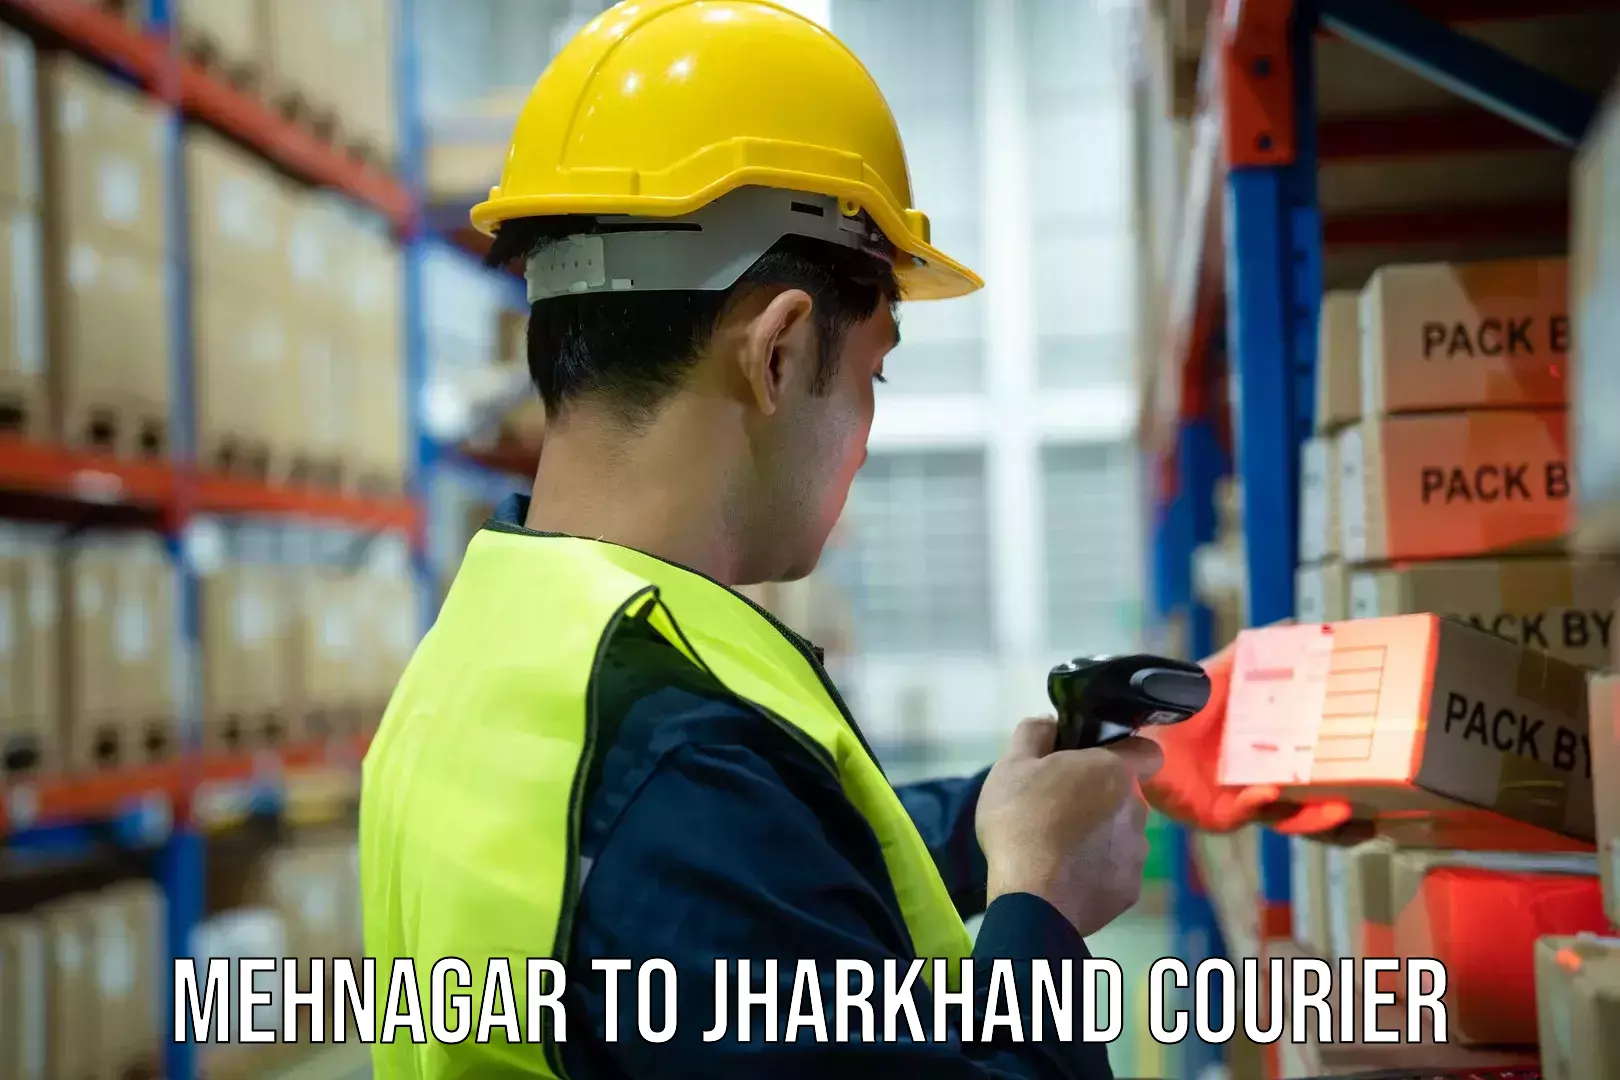 High-capacity shipping options Mehnagar to Ranchi